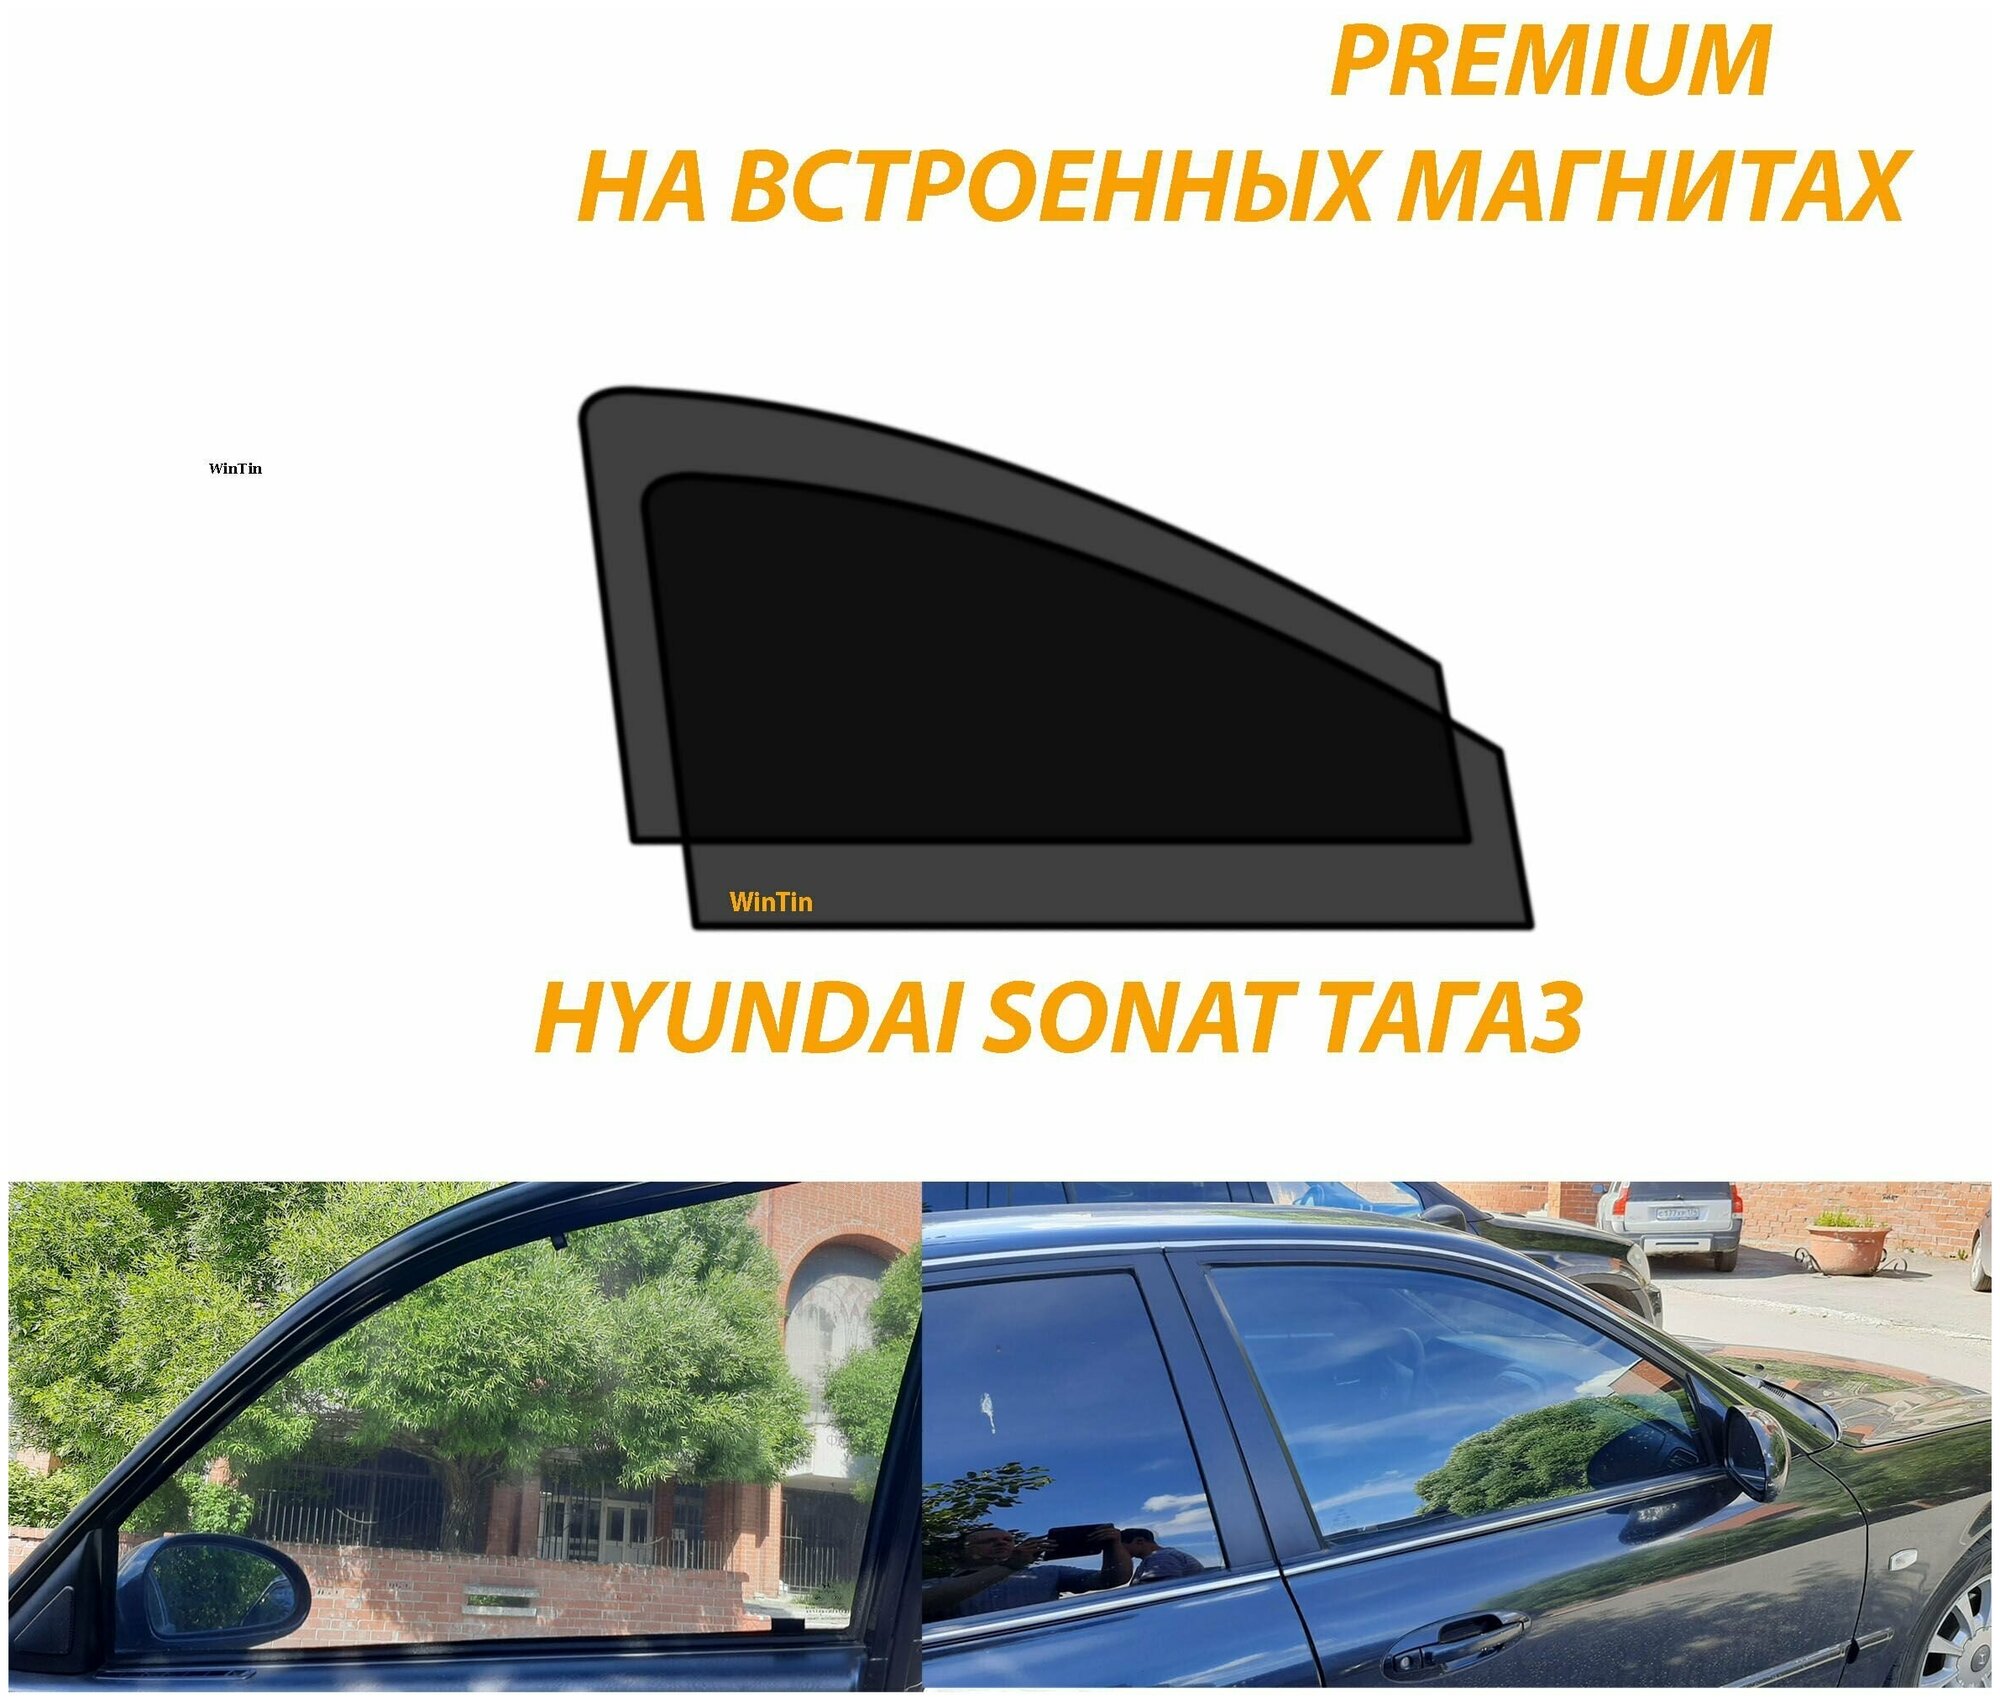 Солнцезащитные автомобильные каркасные шторки на Hyundai Sonata Тагаз IV EF 2001-2012 г. выпуска